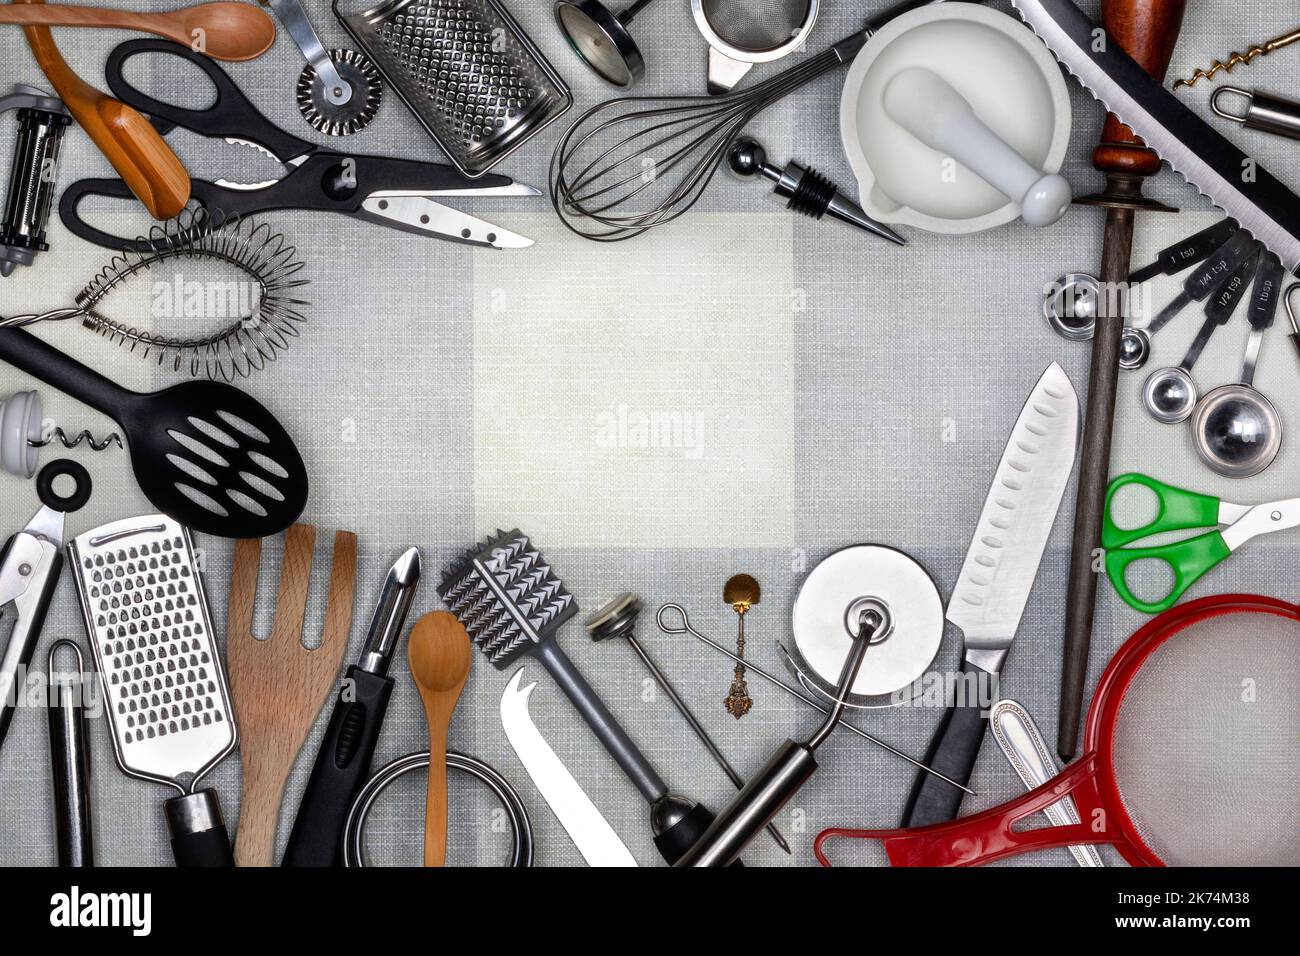 Utensilios de Cocina - Los utensilios de cocina son pequeñas herramientas de mano utilizadas para la preparación de alimentos. Las tareas comunes de la cocina incluyen cortar alimentos a medida, baki Foto de stock